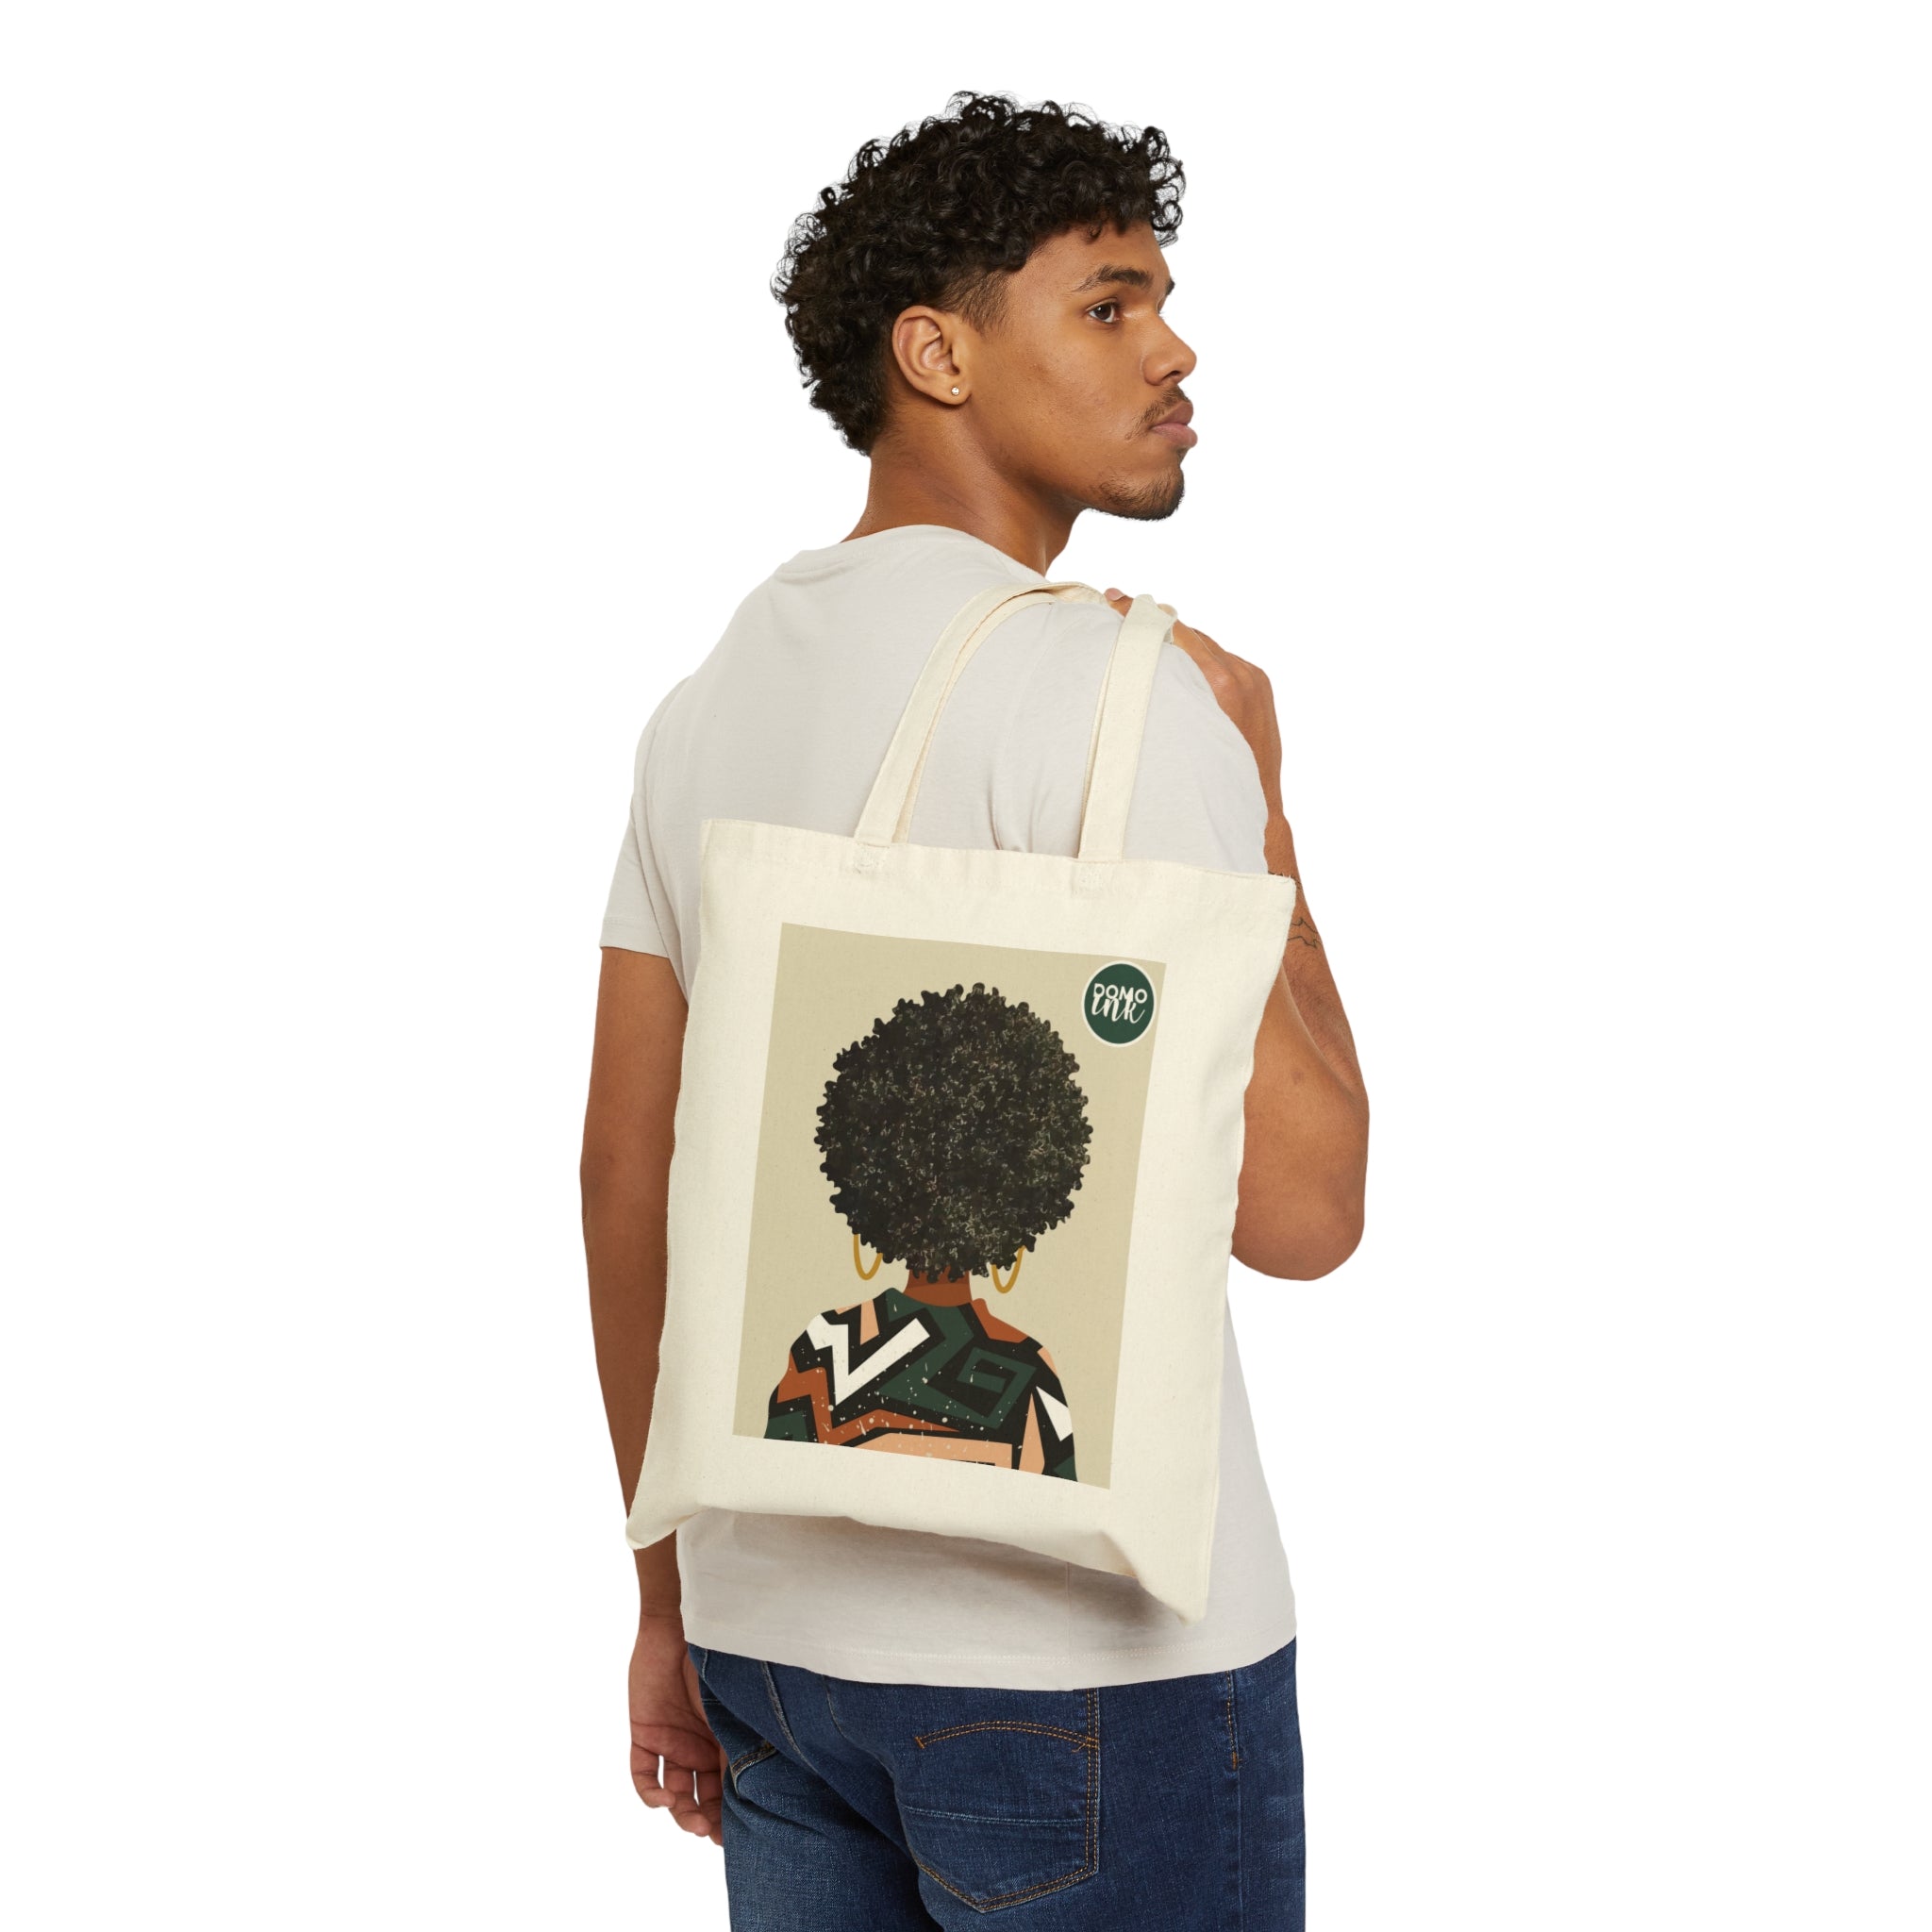 "Black Art Matters" Cotton Canvas Tote Bag